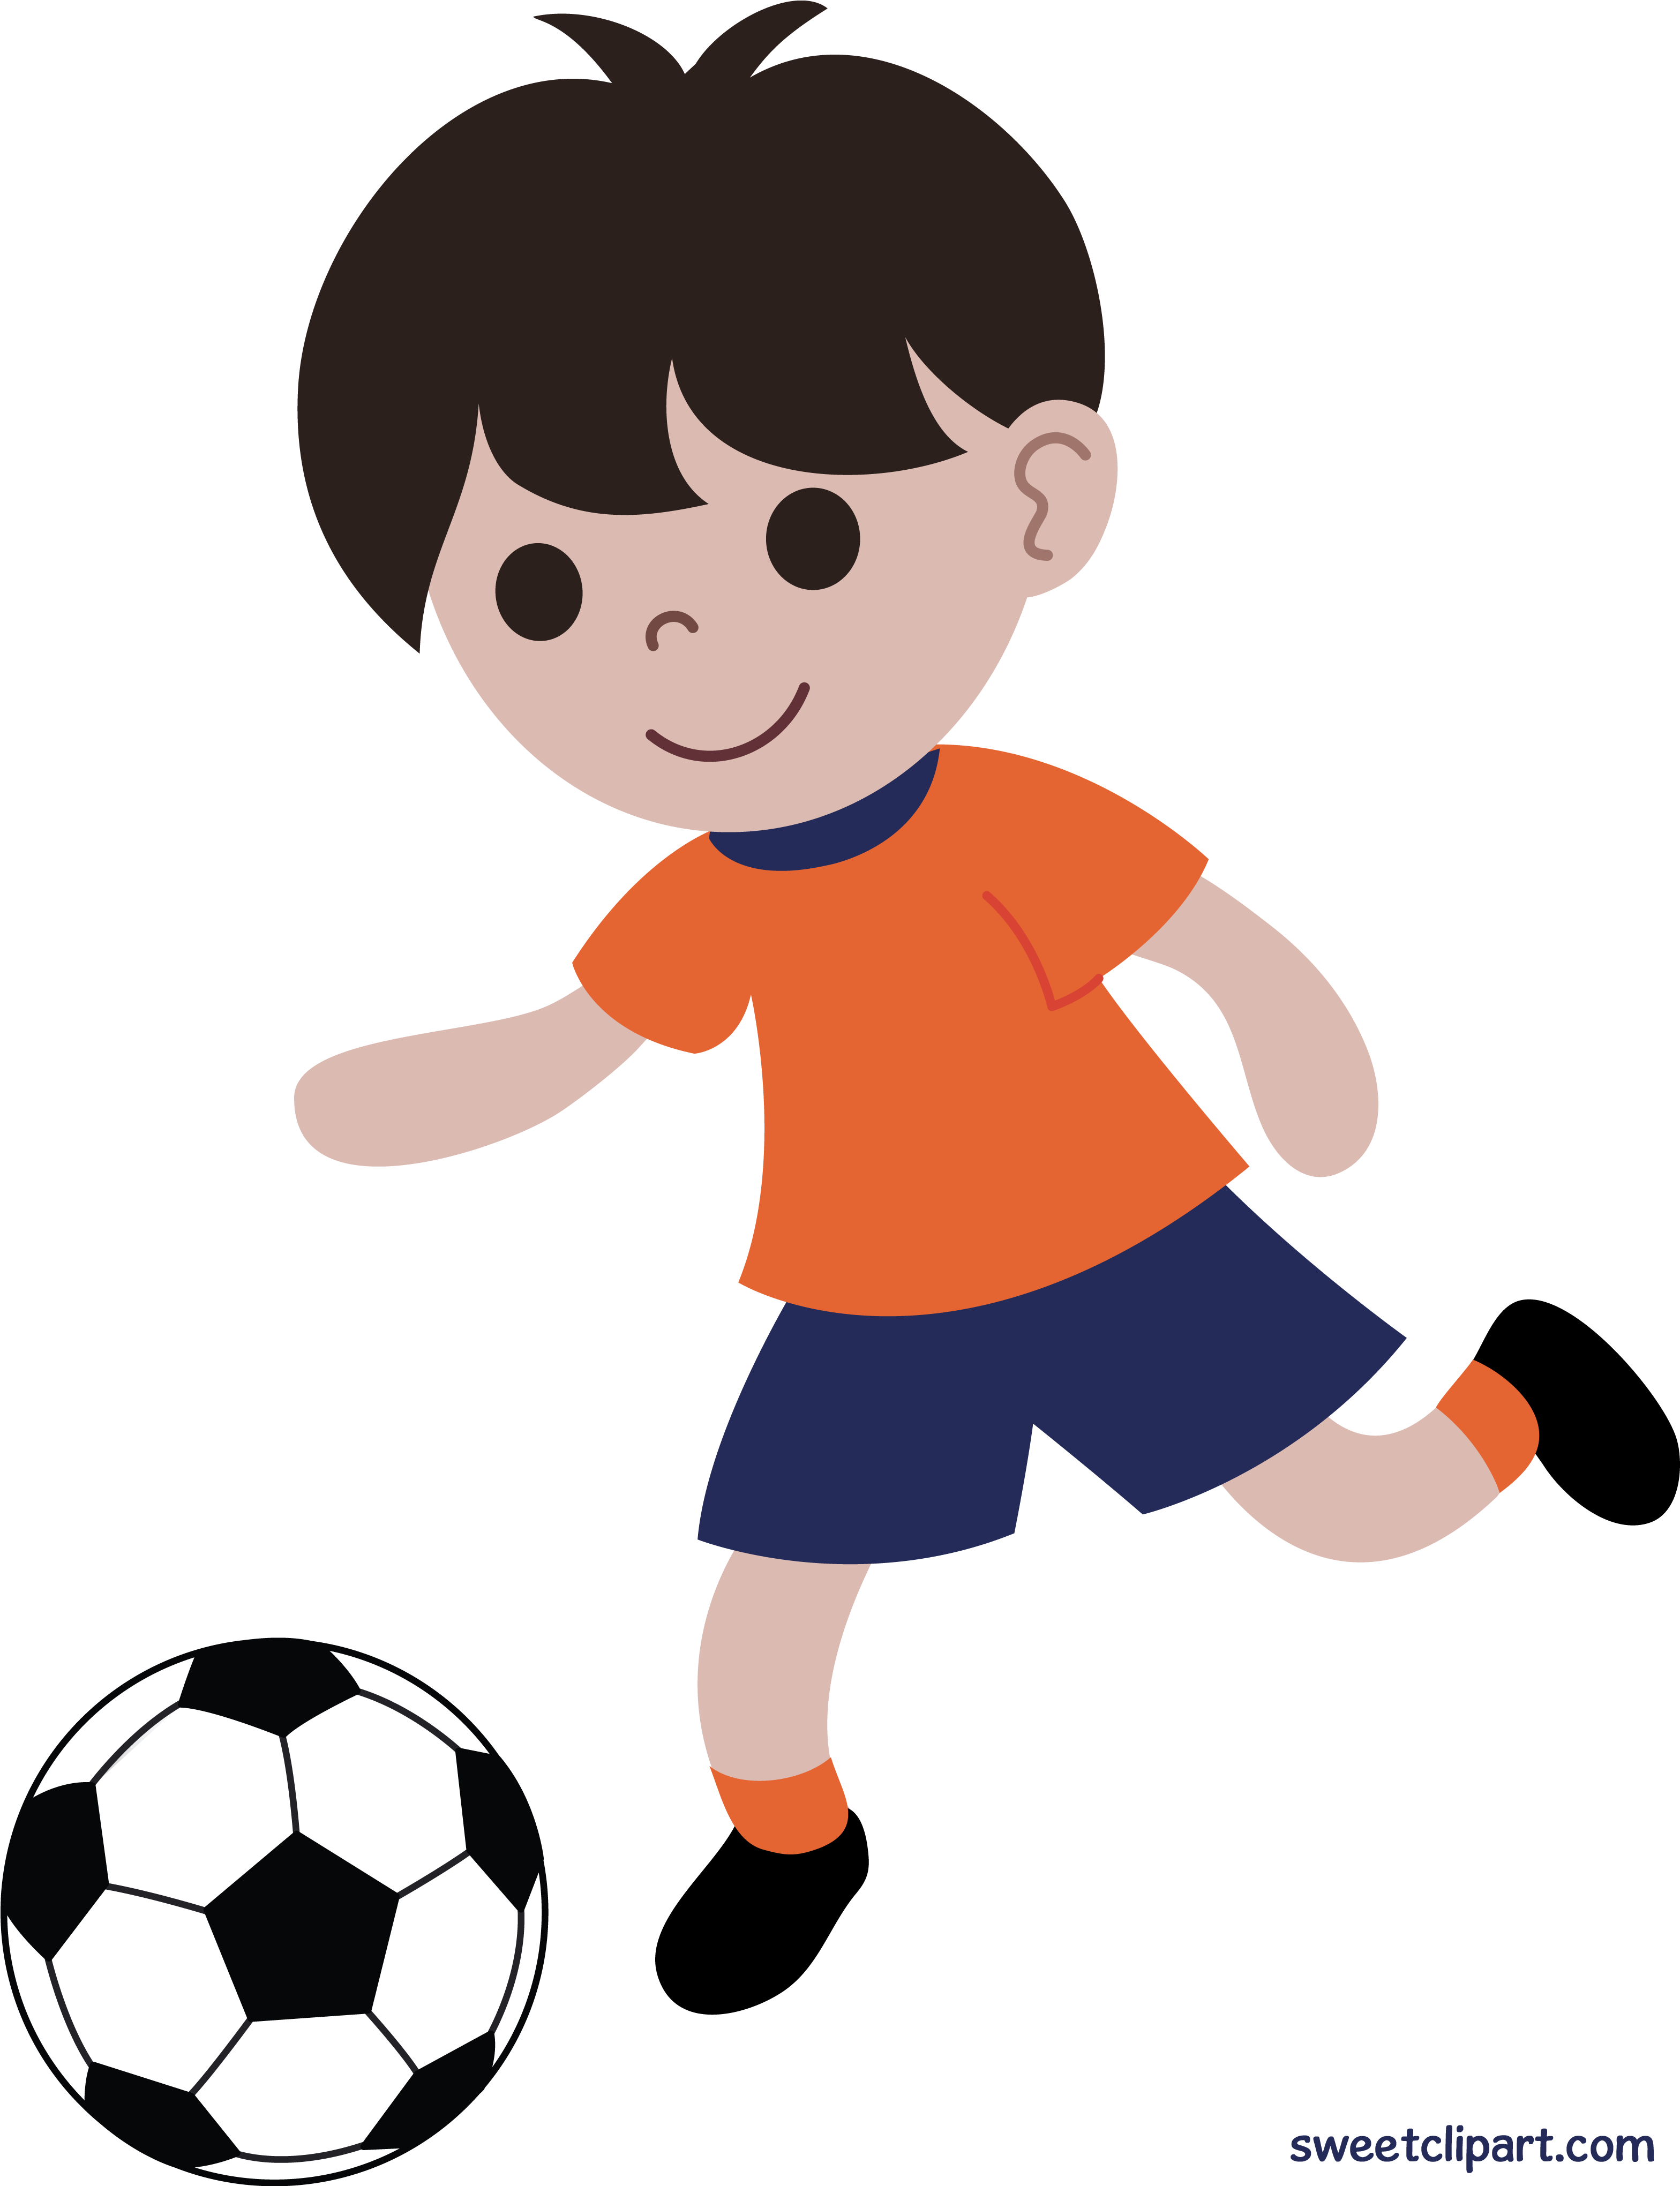 Игры мяч мальчик. Мальчик с мячом. Мальчик играющий в мяч. Футбол мультяшный. Мальчик играет в футбол.